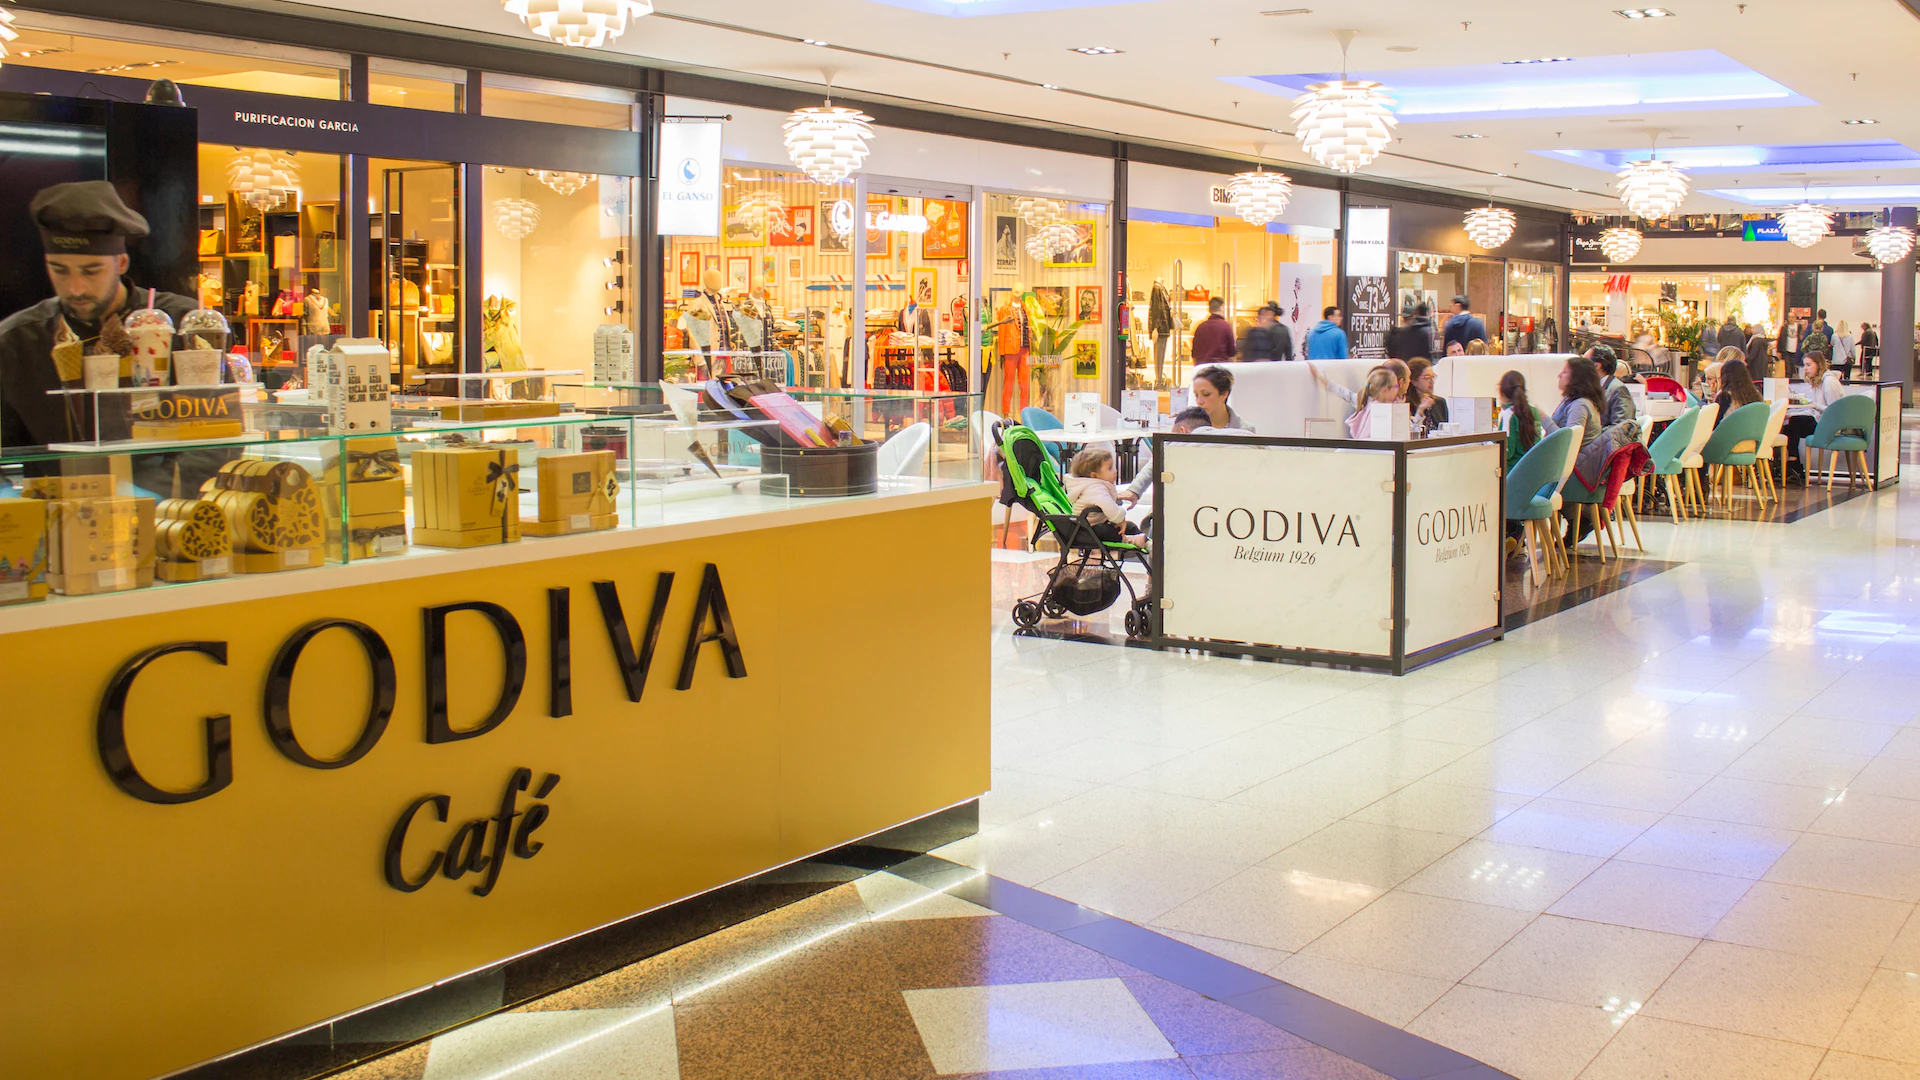 Así es Godiva Café, el espacio gastronómico que se puede encontrar en el centro comercial La Cañada.